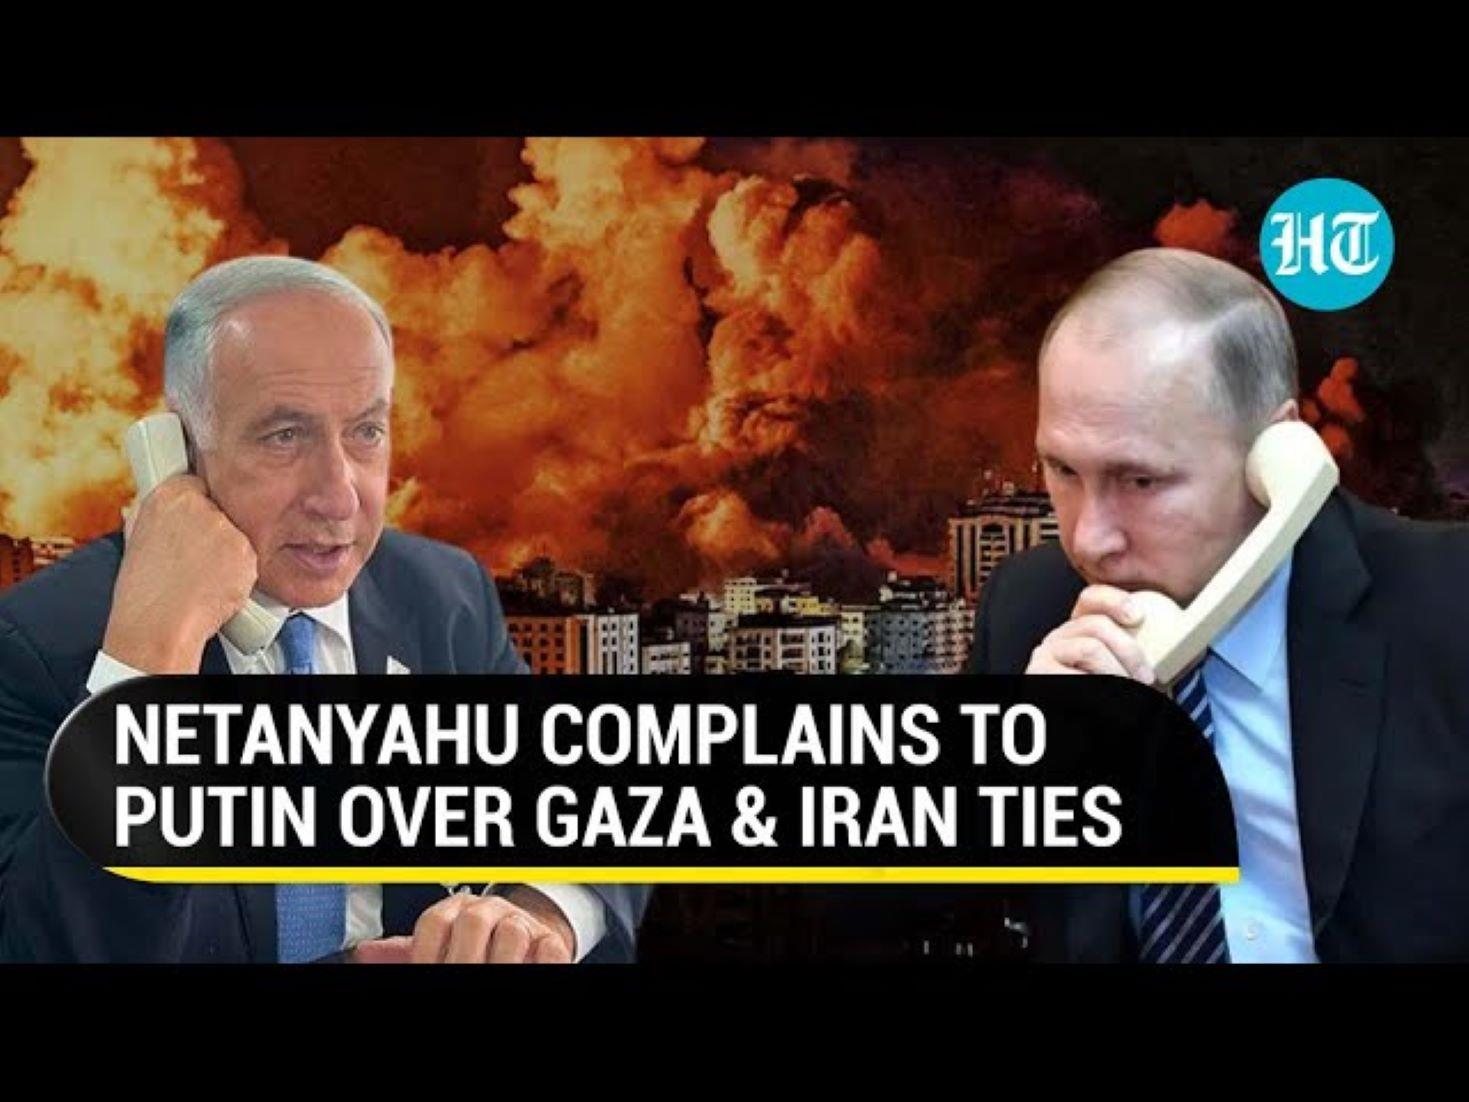 Putin, Netanyahu Discuss Gaza Over Phone